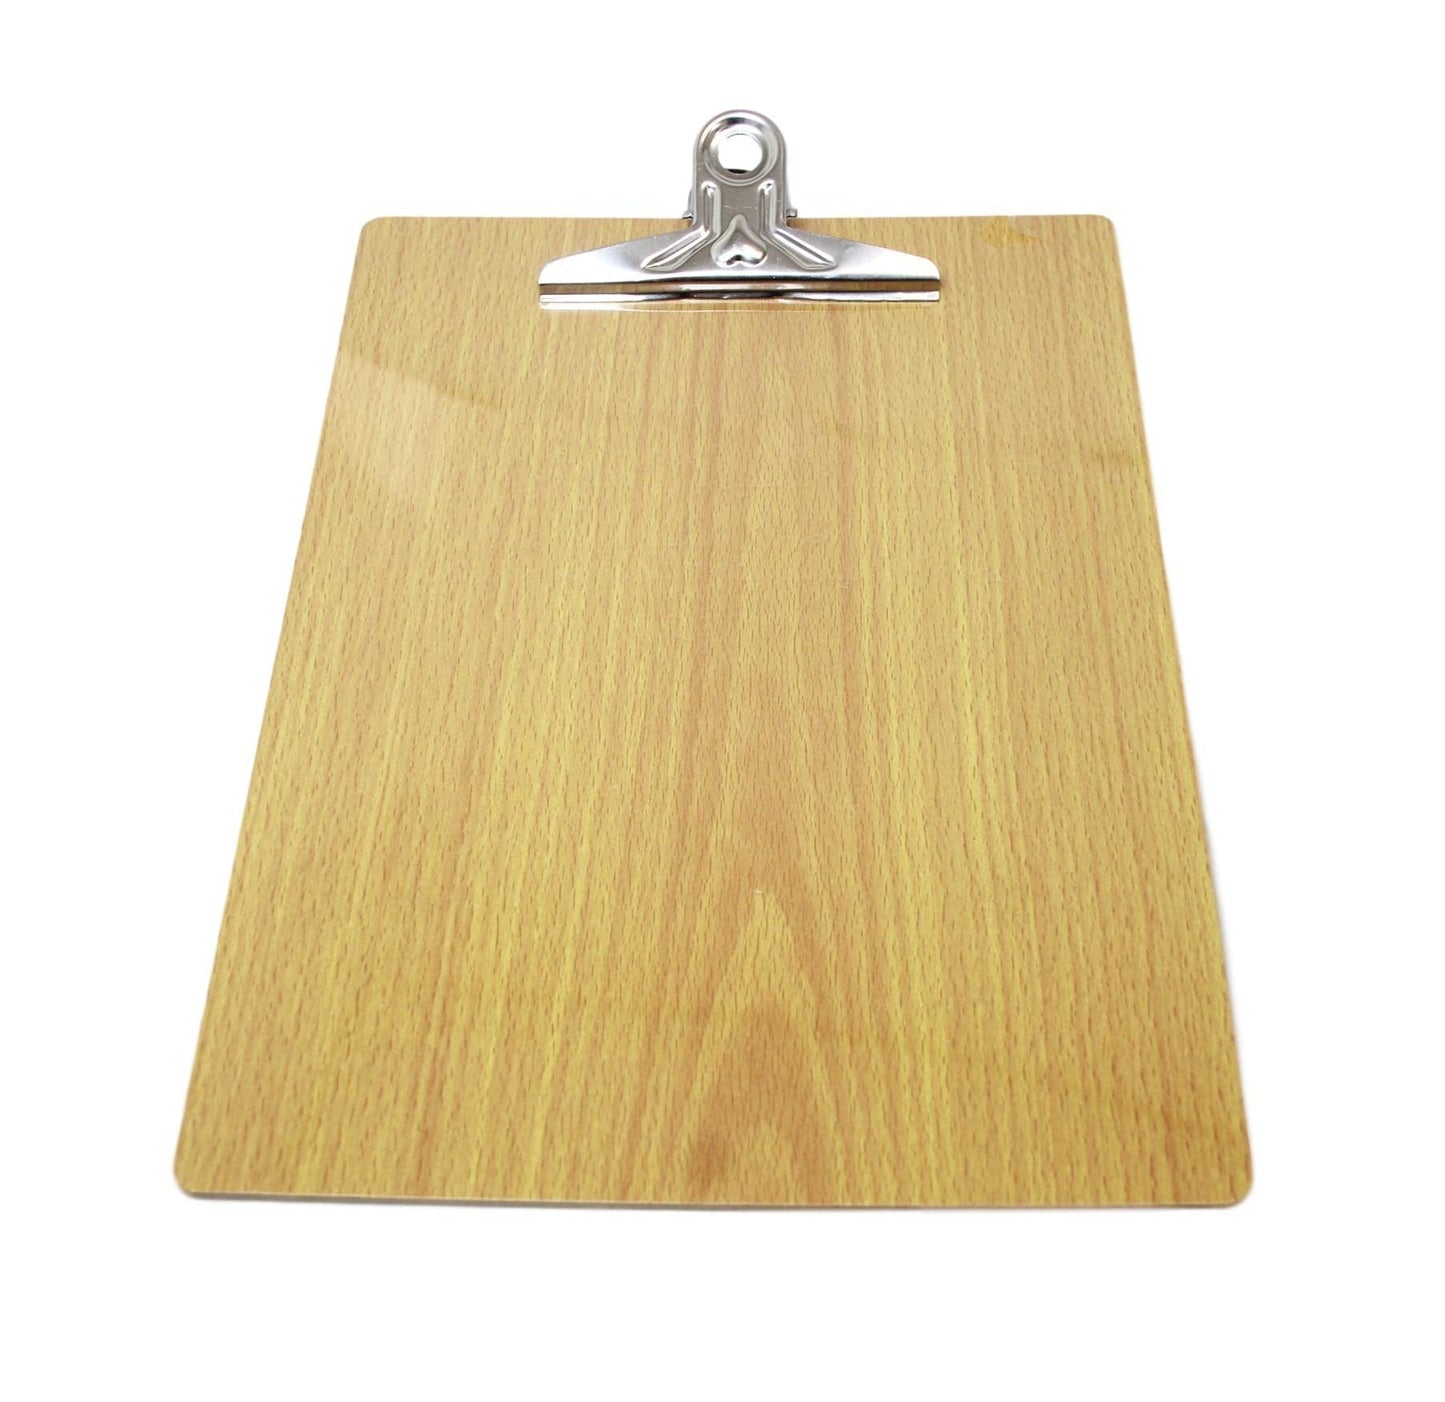 A4 Wooden Paper Menu Clipboard School Office Chrome Clip 31cm x 23cm 5926 (Large Letter Rate)